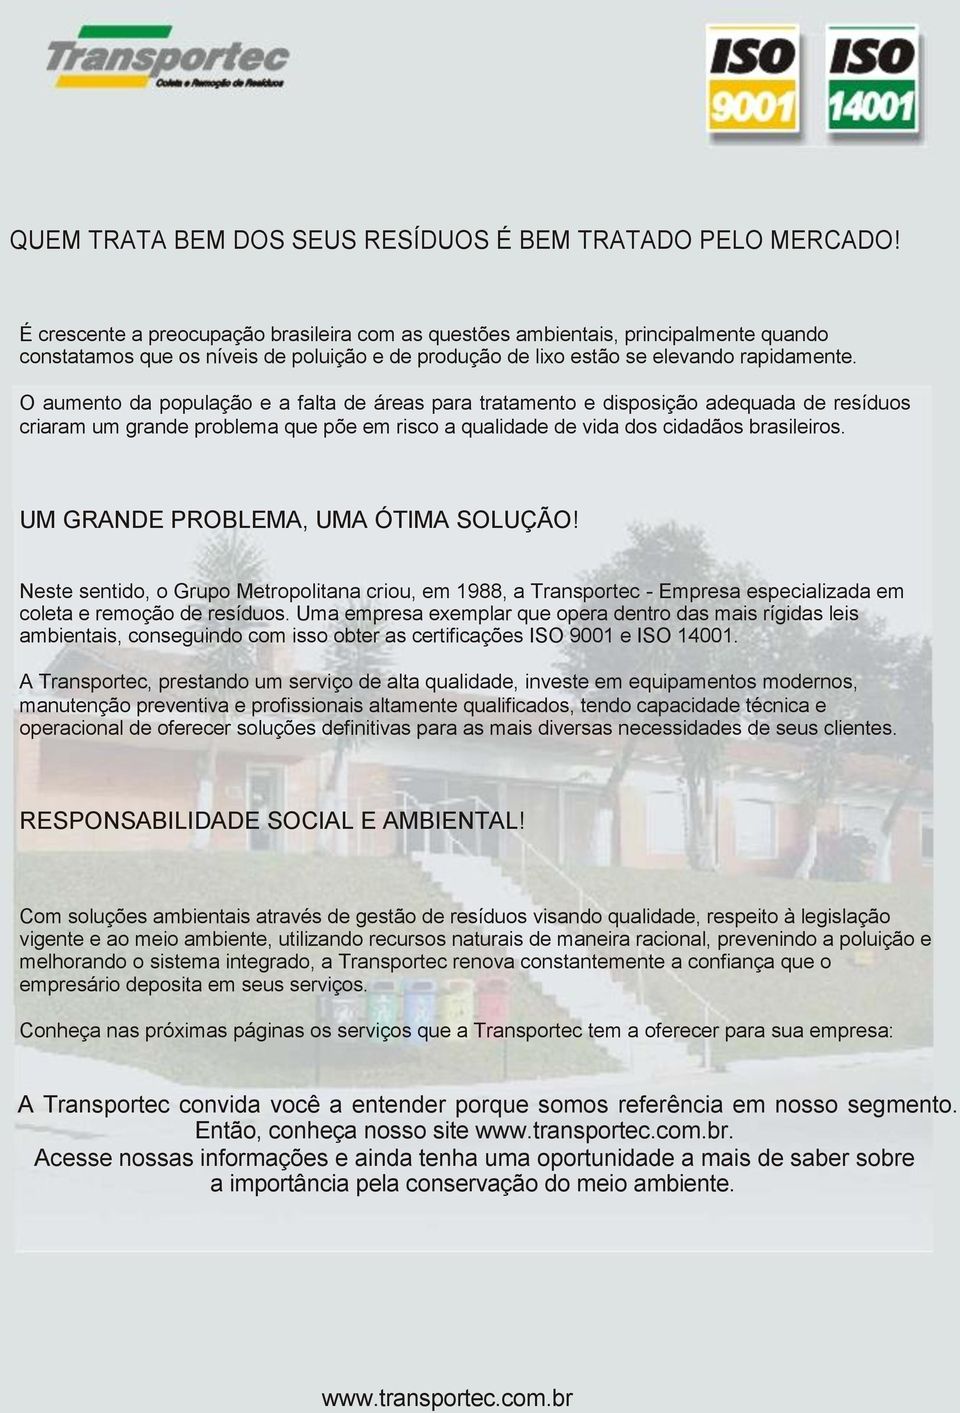 O aumento da população e a falta de áreas para tratamento e disposição adequada de resíduos criaram um grande problema que põe em risco a qualidade de vida dos cidadãos brasileiros.